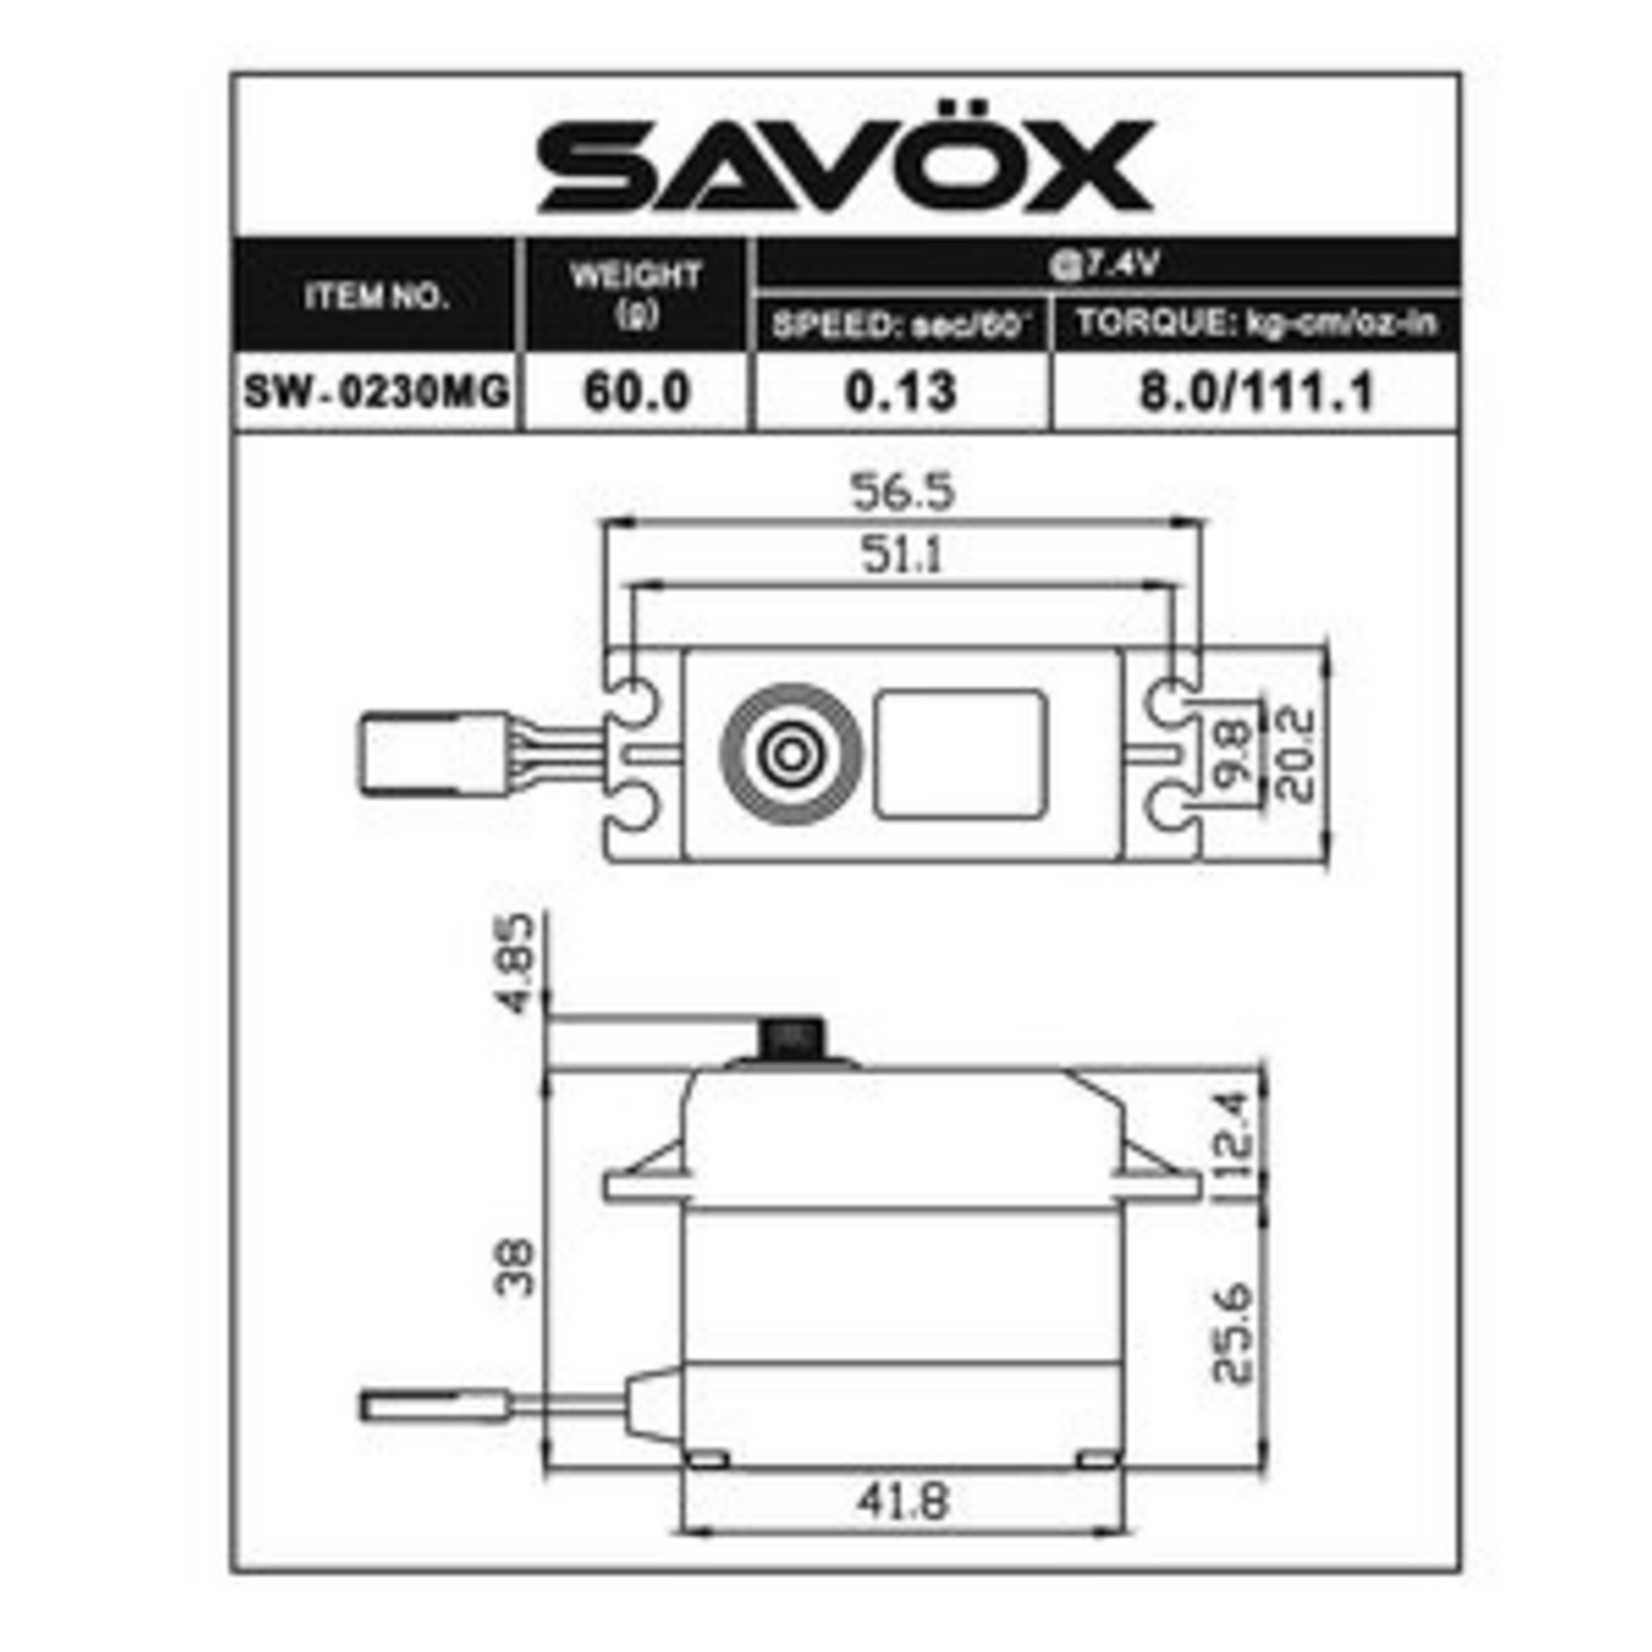 SAVOX SAVSW0230MGP  Waterproof Standard Digital Servo w/Soft Start, 0.13sec / 111.1oz @ 7.4V